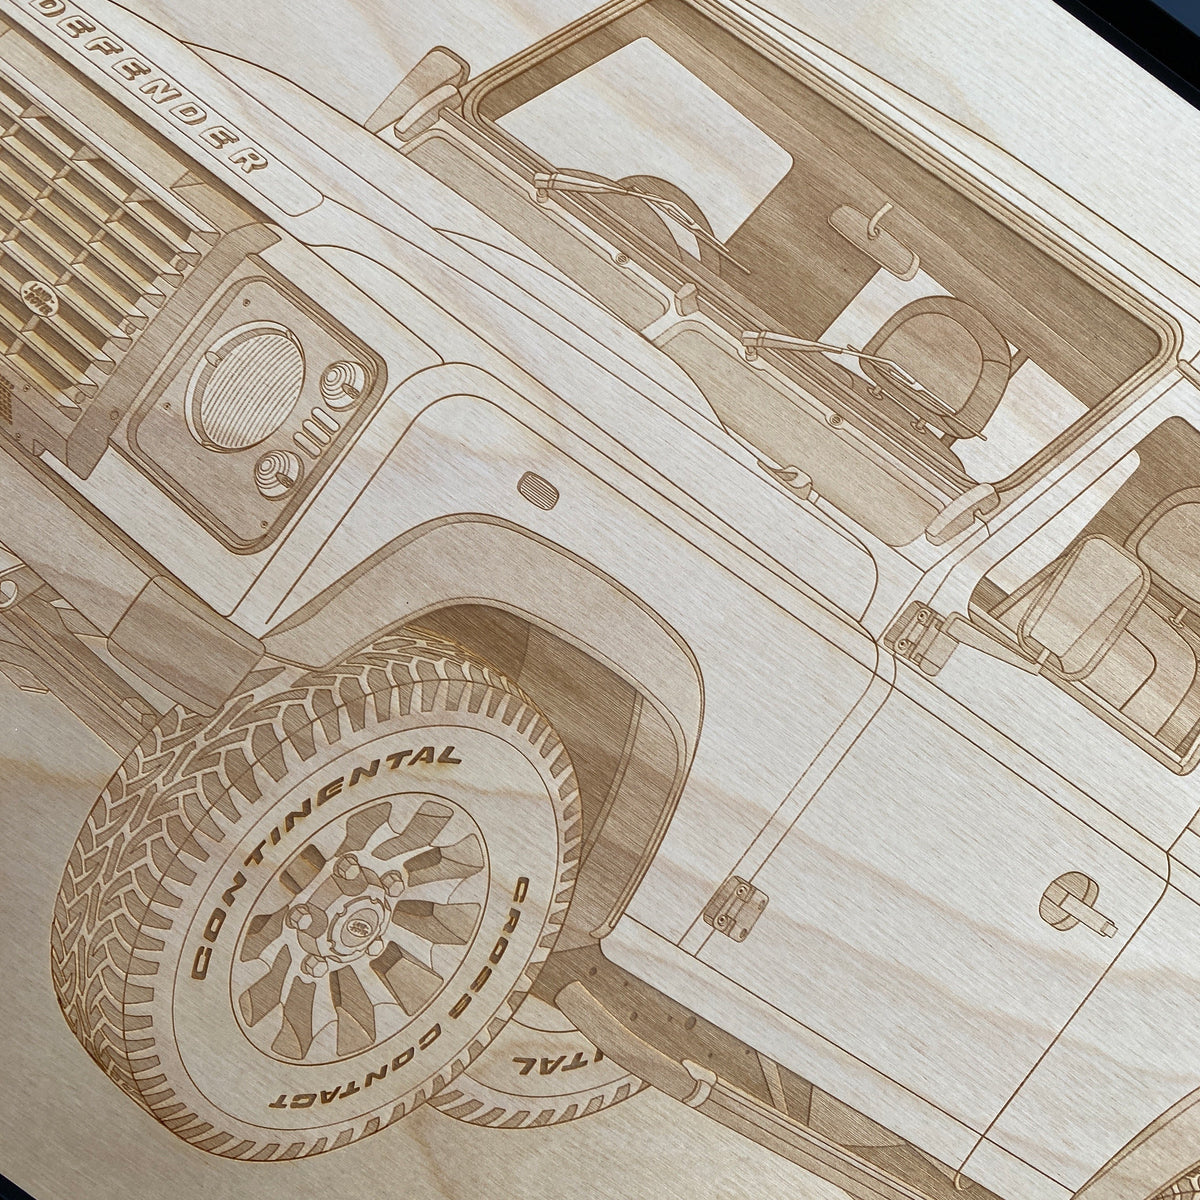 Land Rover Defender Framed Wood Engraved Artwork